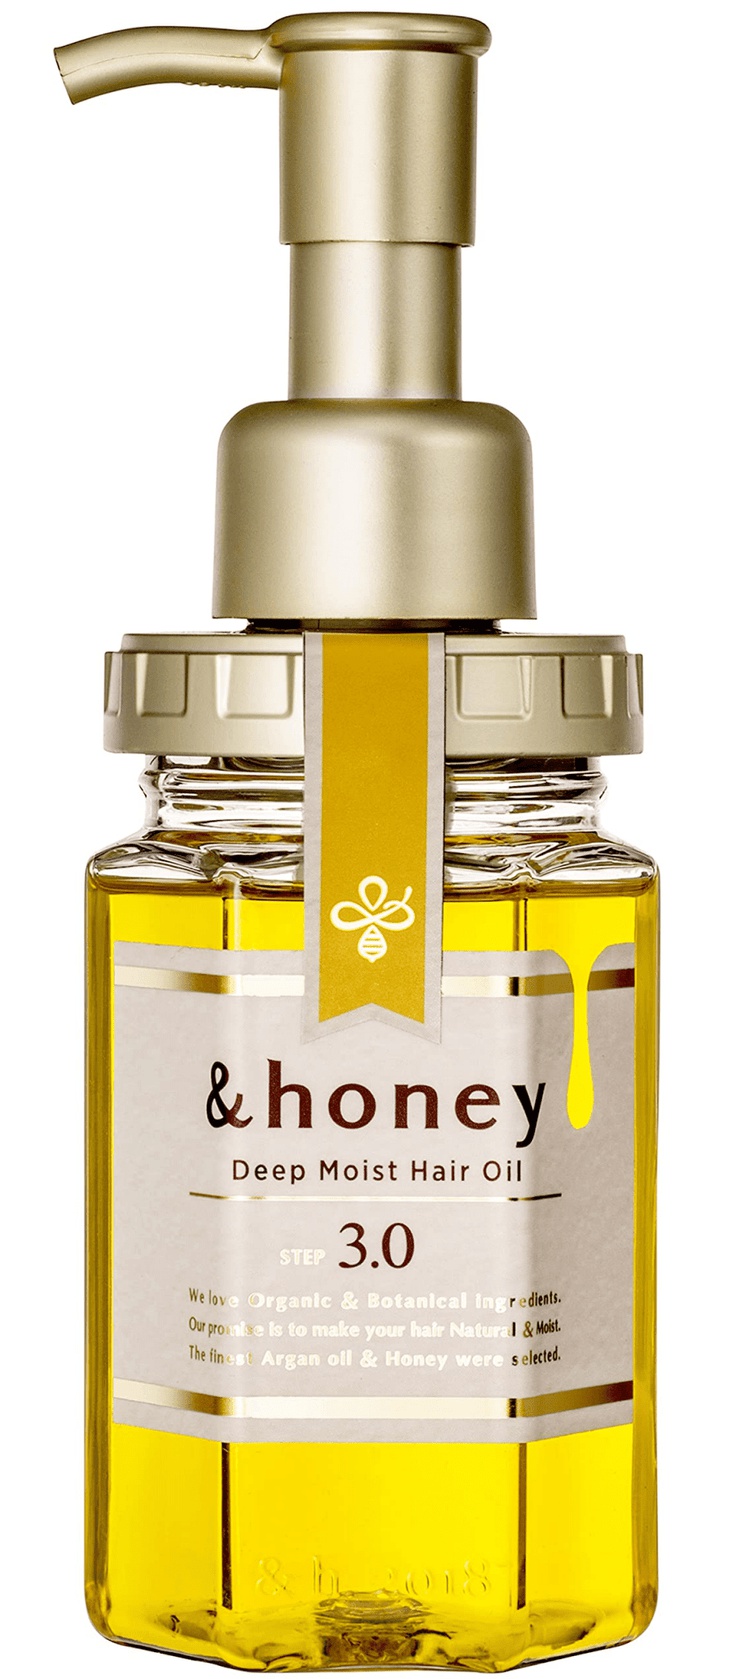 and honey Deep Moist Repair Hair Oil 3.0